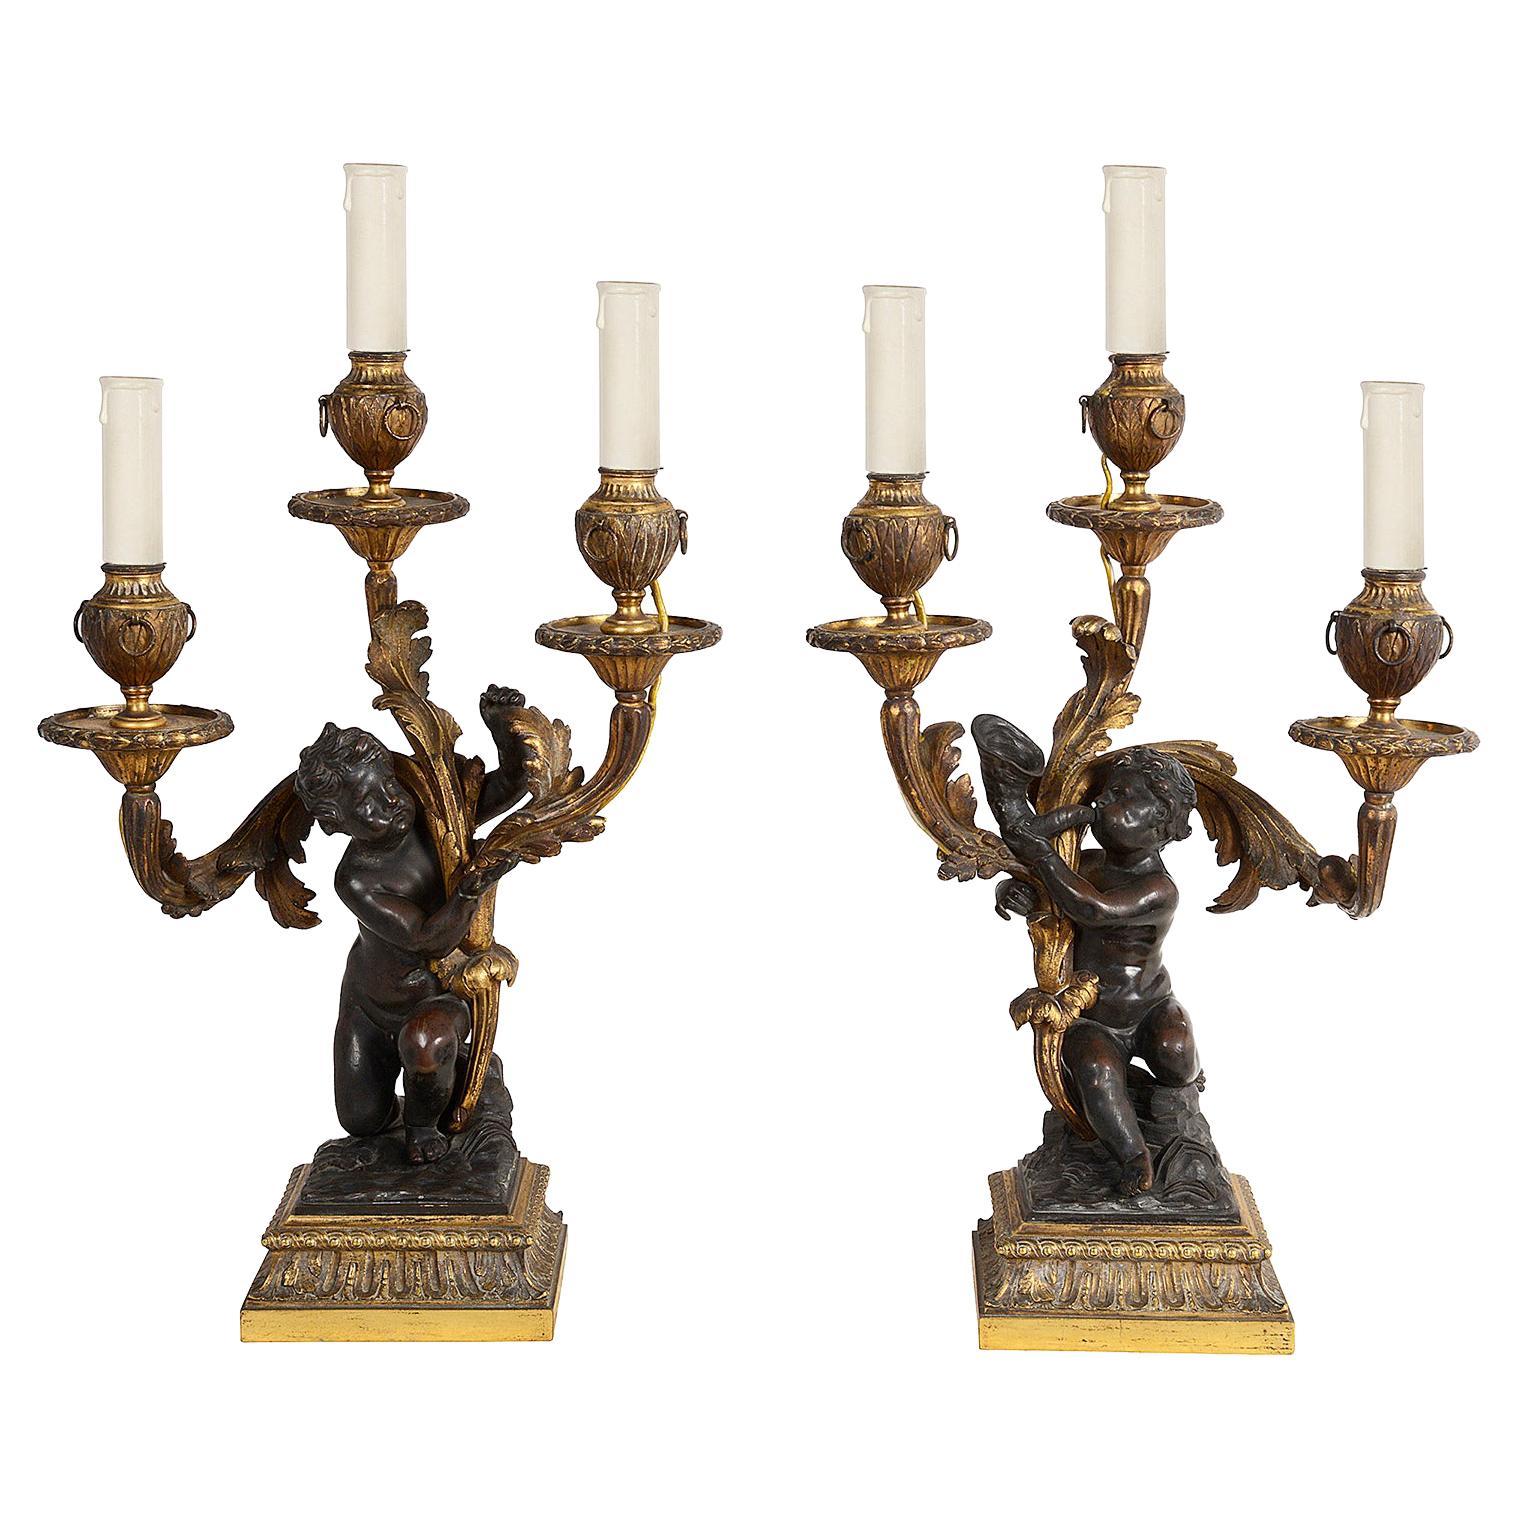 Ein Paar vergoldeter Ormolu- und patinierter Bronzekandelaber mit drei Zweigen, jeder mit einer klassischen knienden Putte, die einen Kandelaber mit Blattwerk und urnenartigen Leuchtern und Ringdekoration trägt, um 1800.